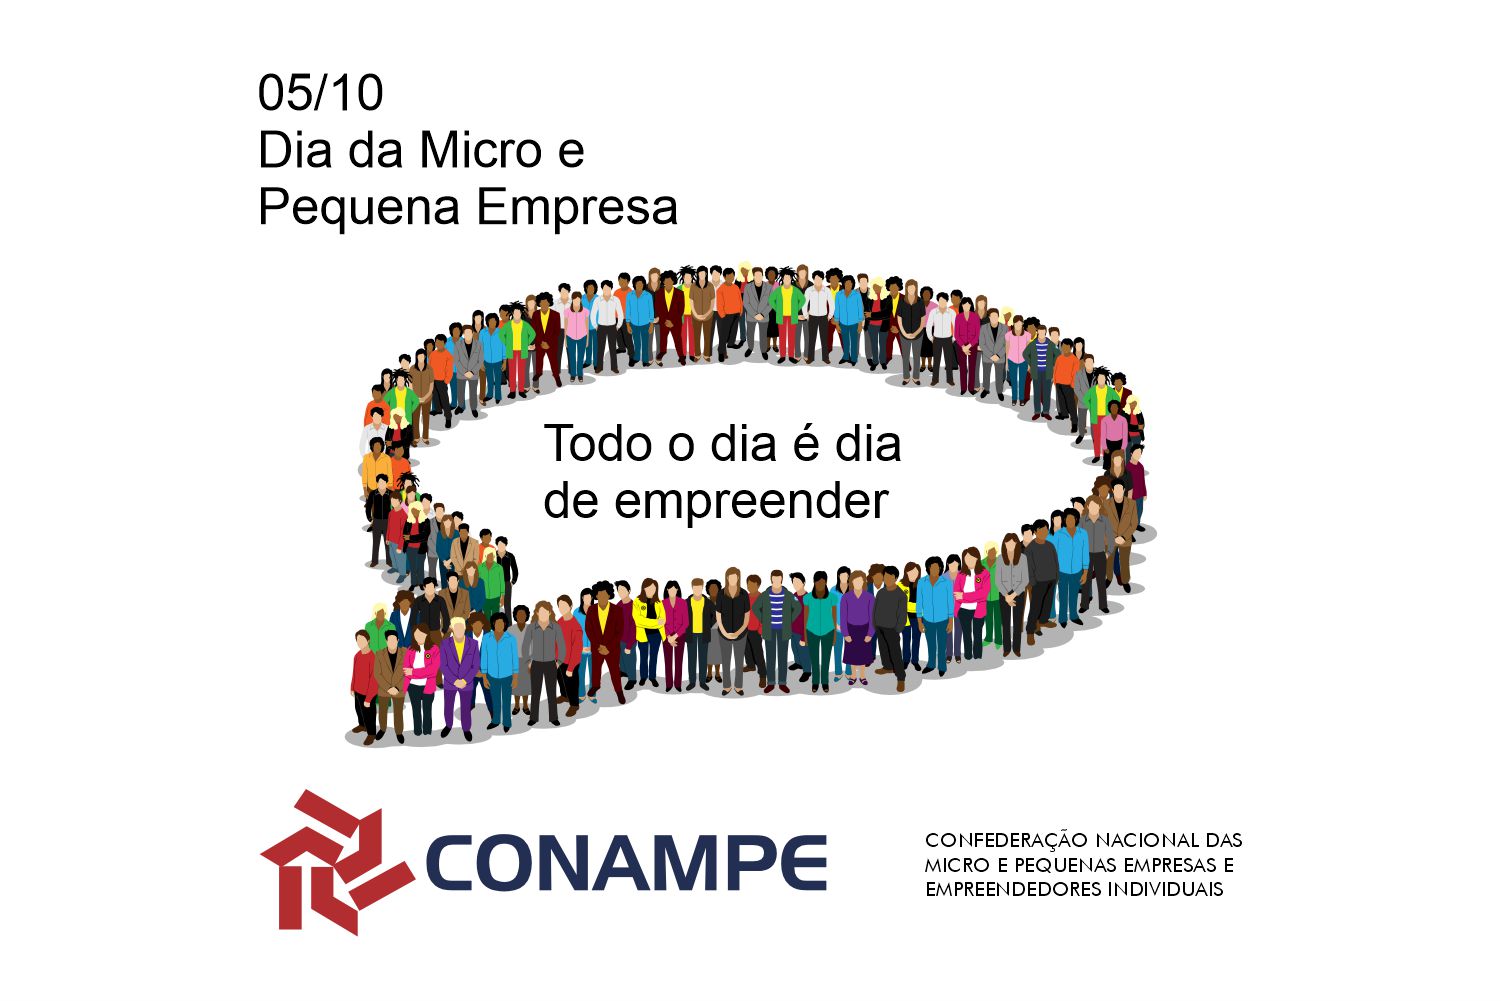 Dia da Micro e Pequena Empresa evidencia a importância dos empreendedores  para o Brasil